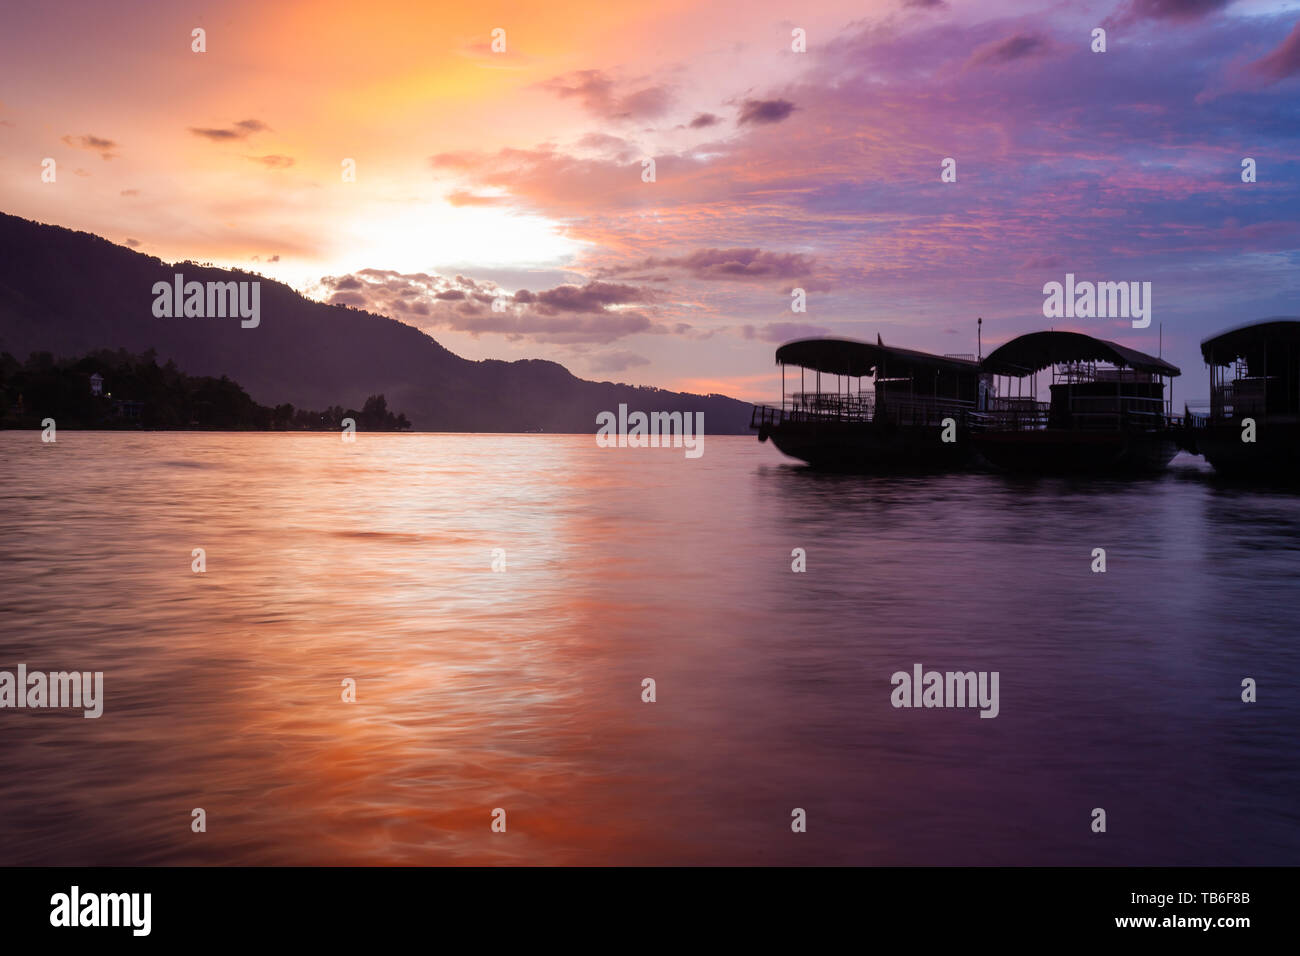 Sunset over Tuk Tuk peninsula, Samosir Island, Lake Toba, Sumatra, Indonesia Stock Photo